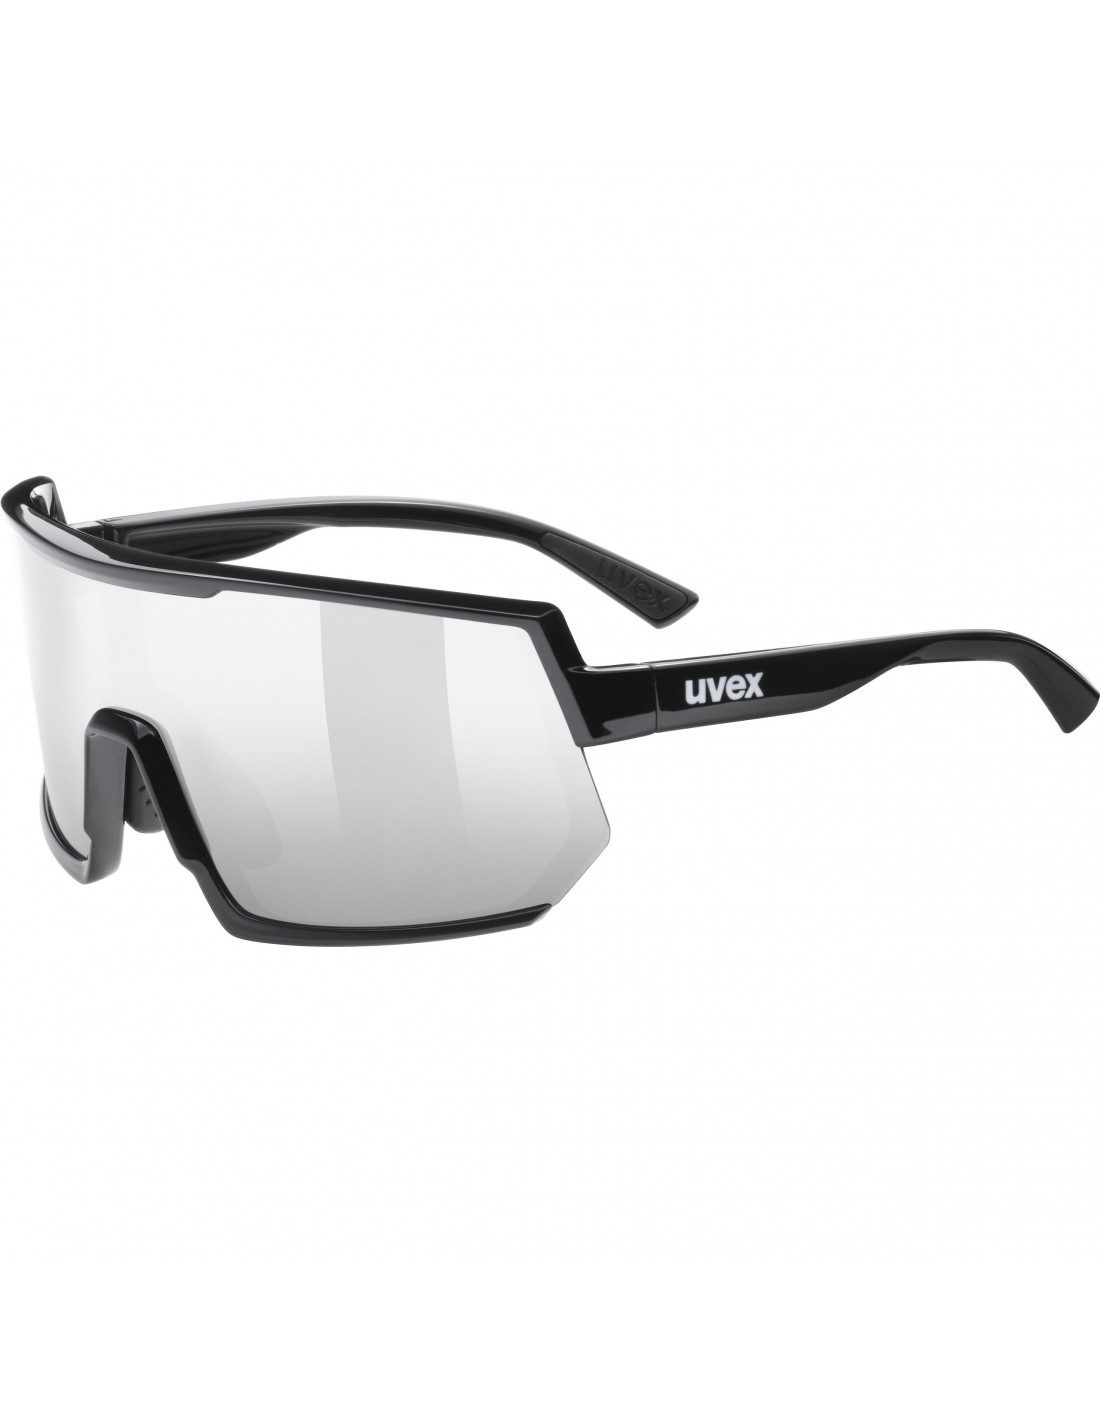 Uvex Sportstyle 235, black, Lens: uvex supravision mirror silver Cat. 3 Brillenfassung - Sportbrillen, von Uvex